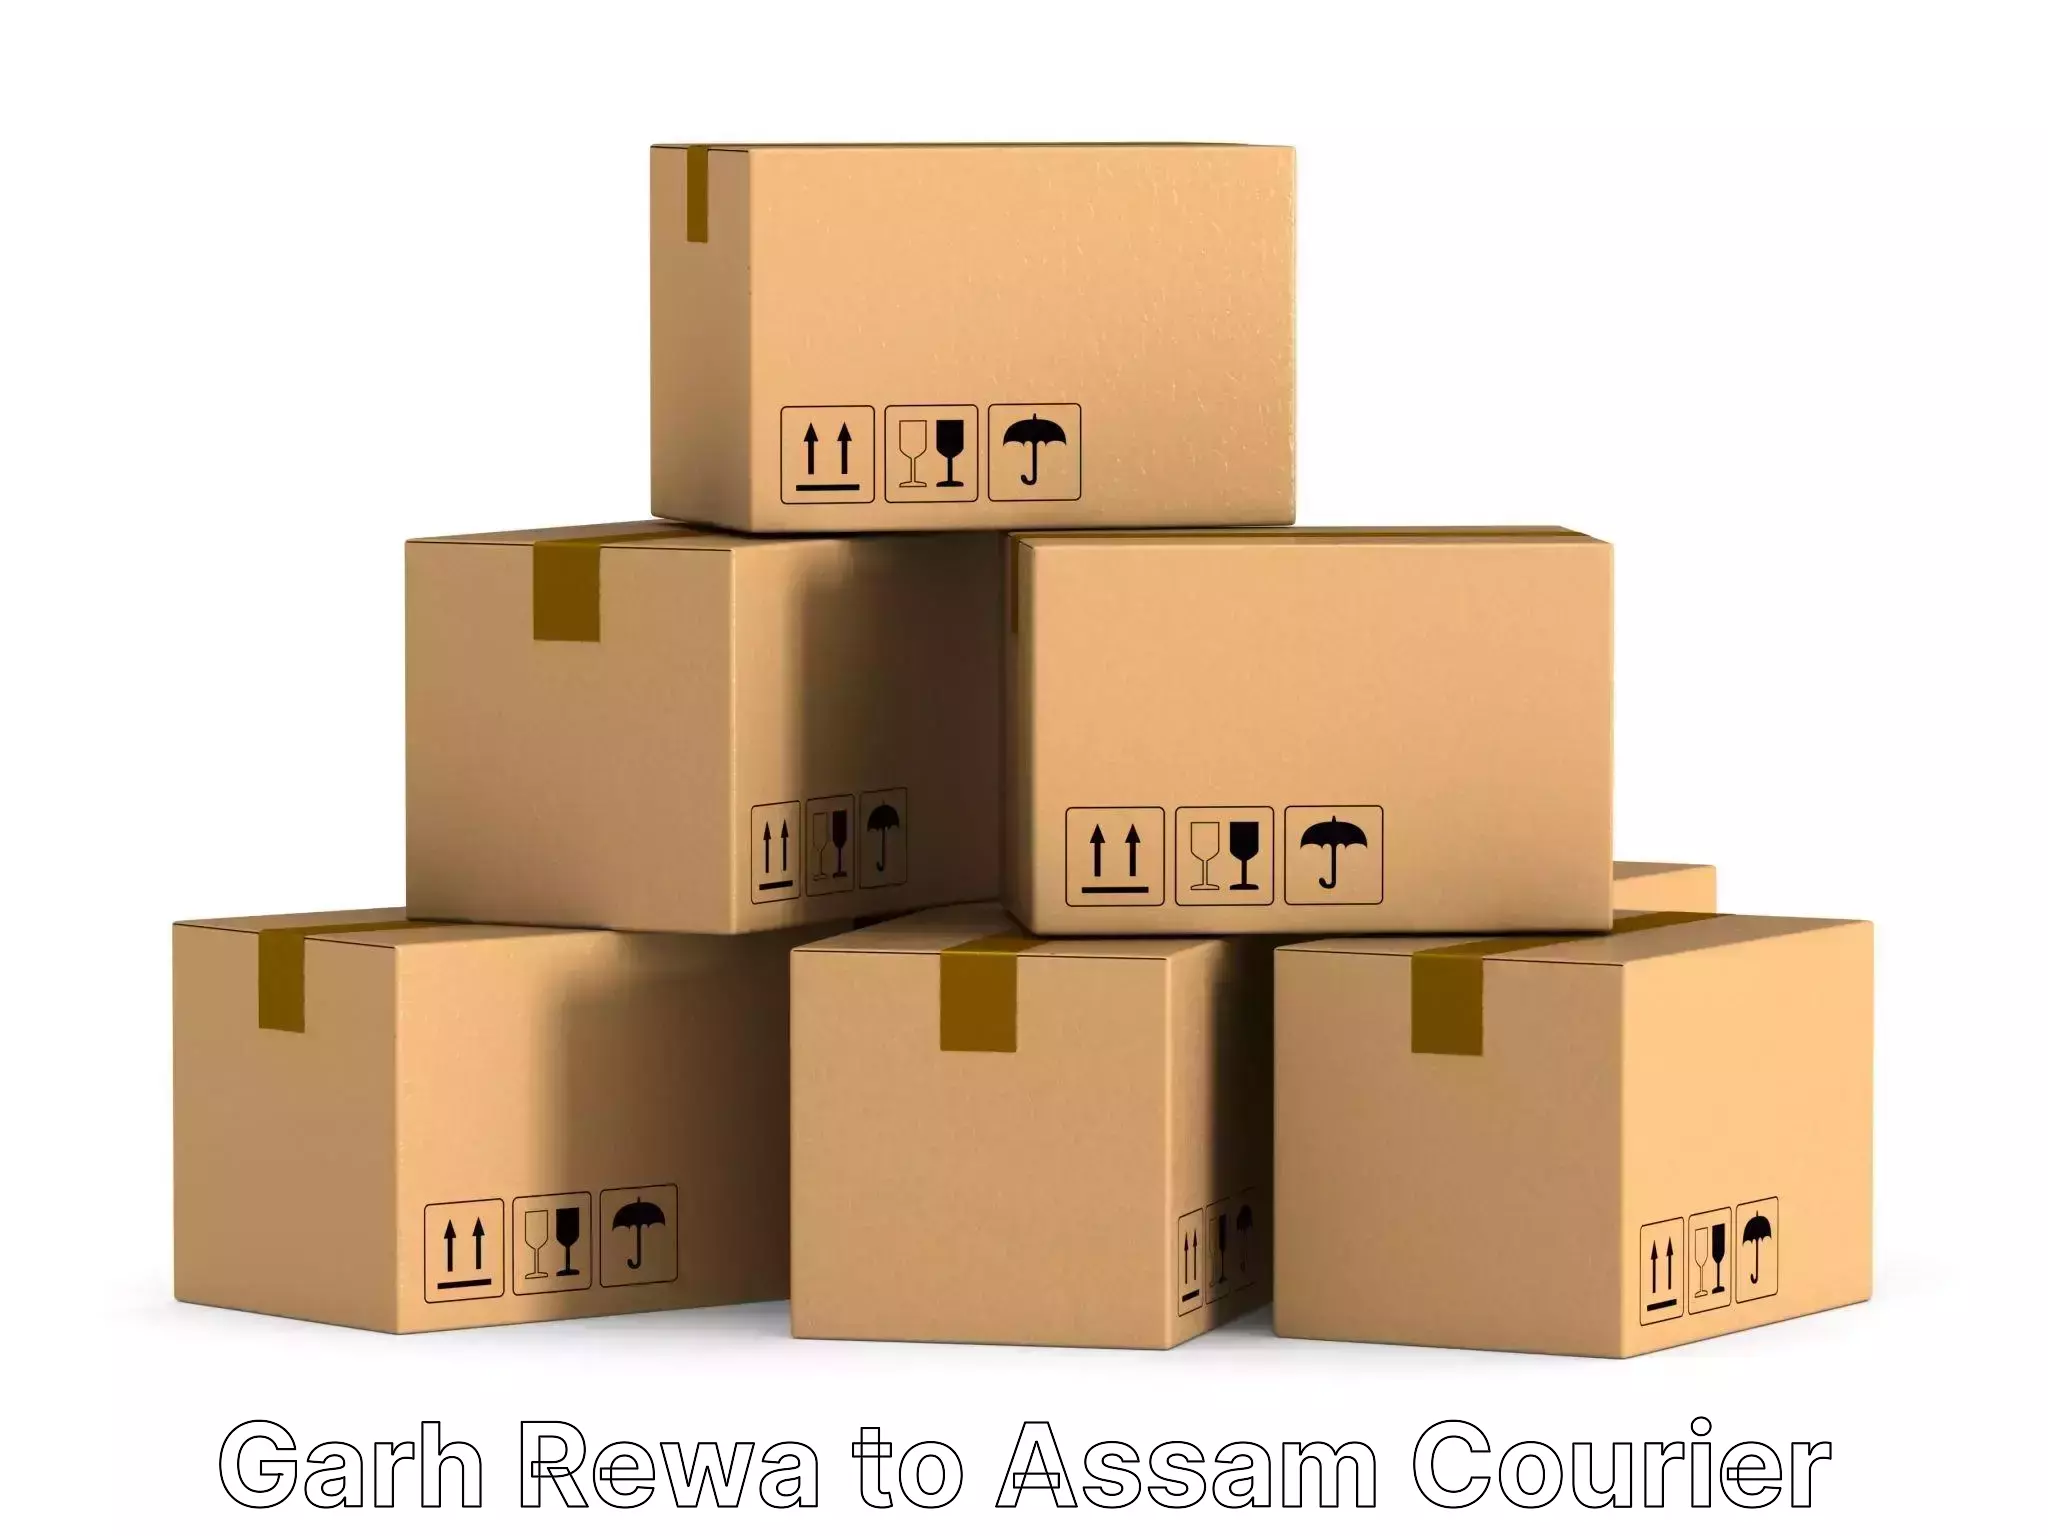 Full-service furniture transport Garh Rewa to Assam